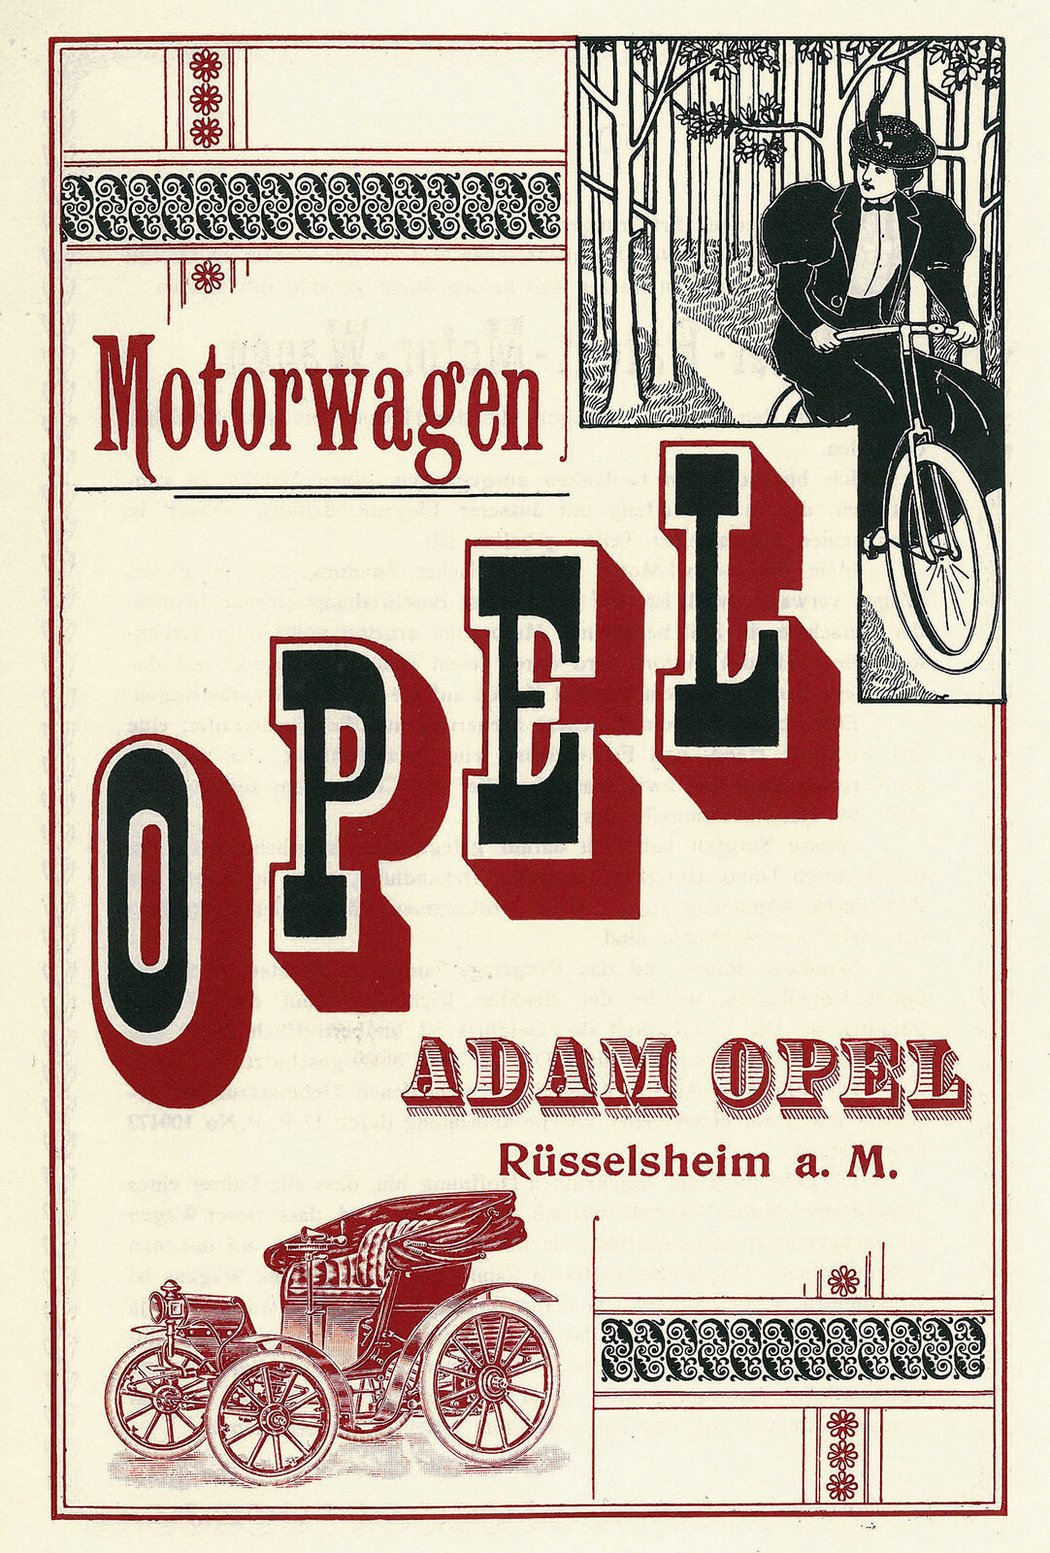 Před 160 lety vznikla společnost Opel